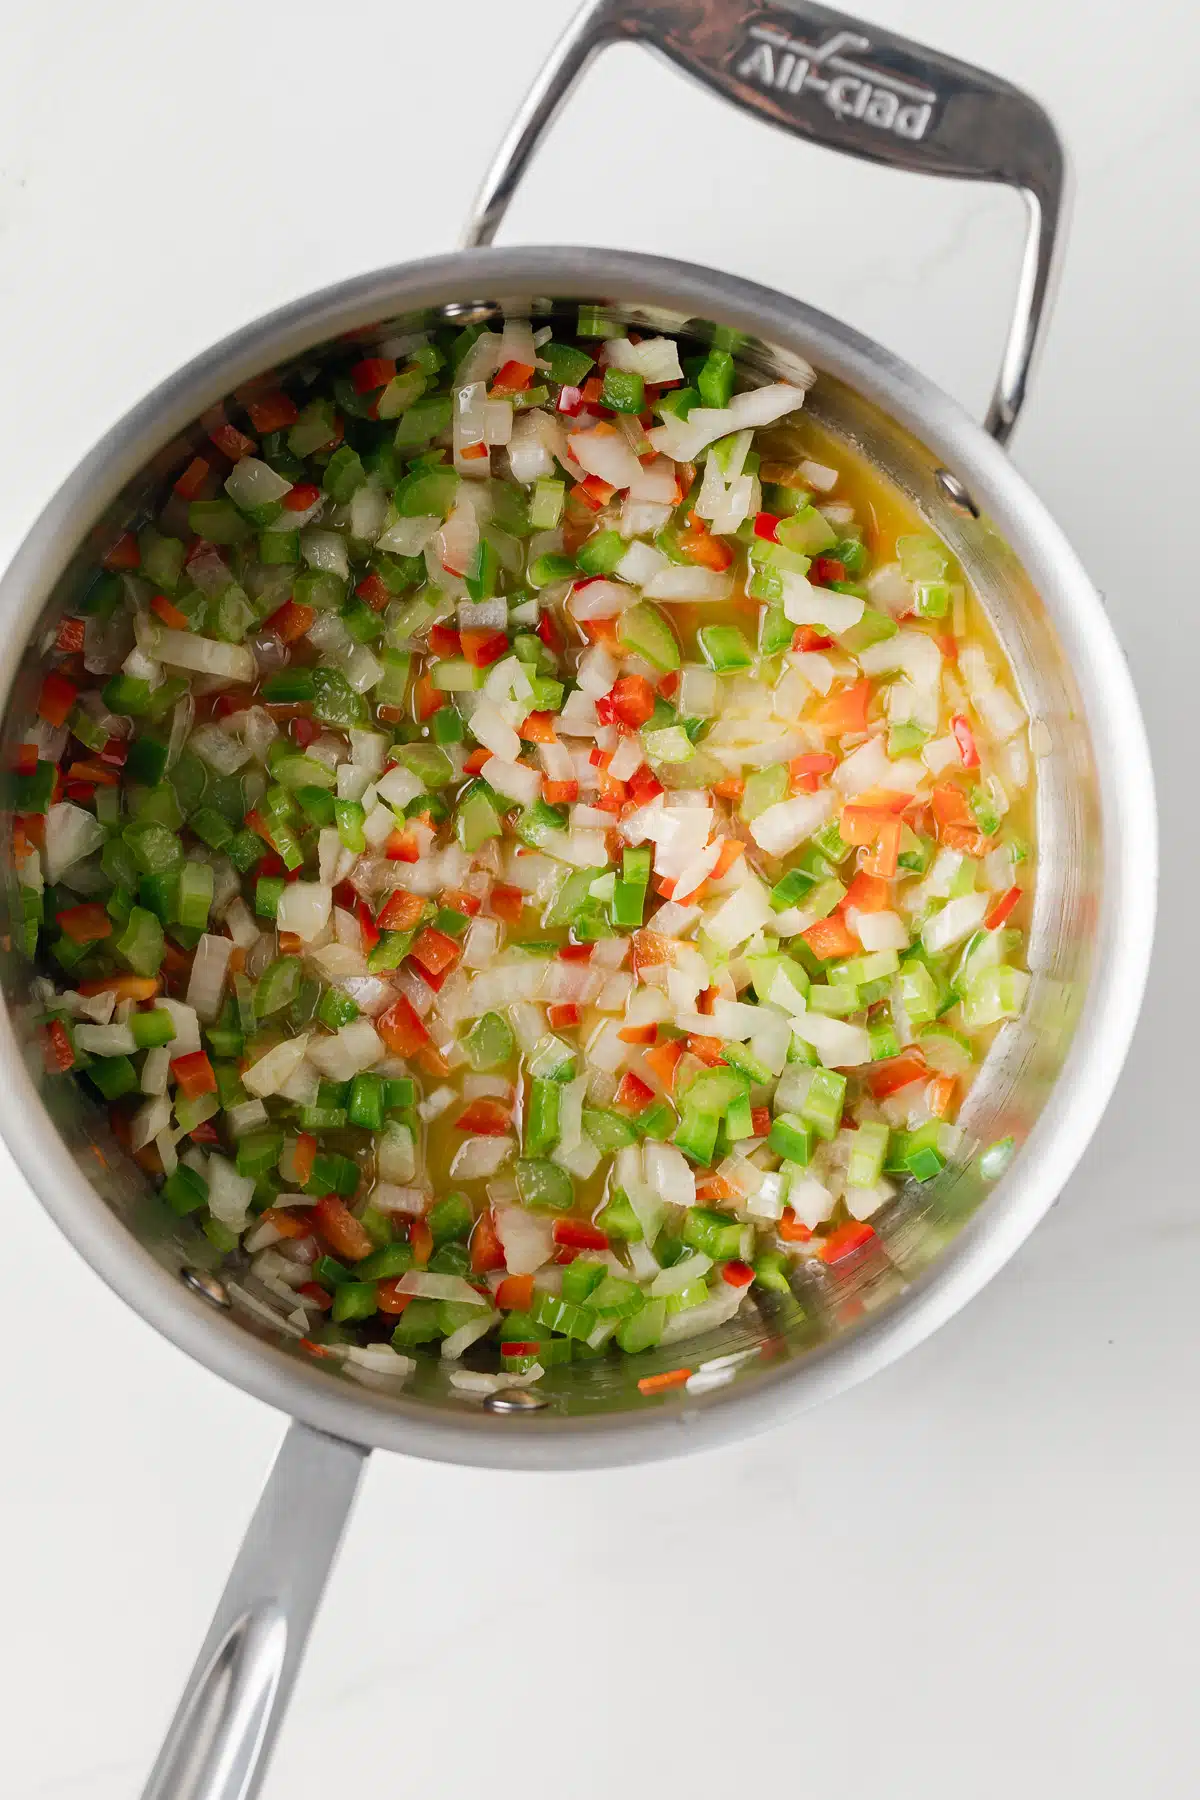 Sauteed veggies in saucepan.